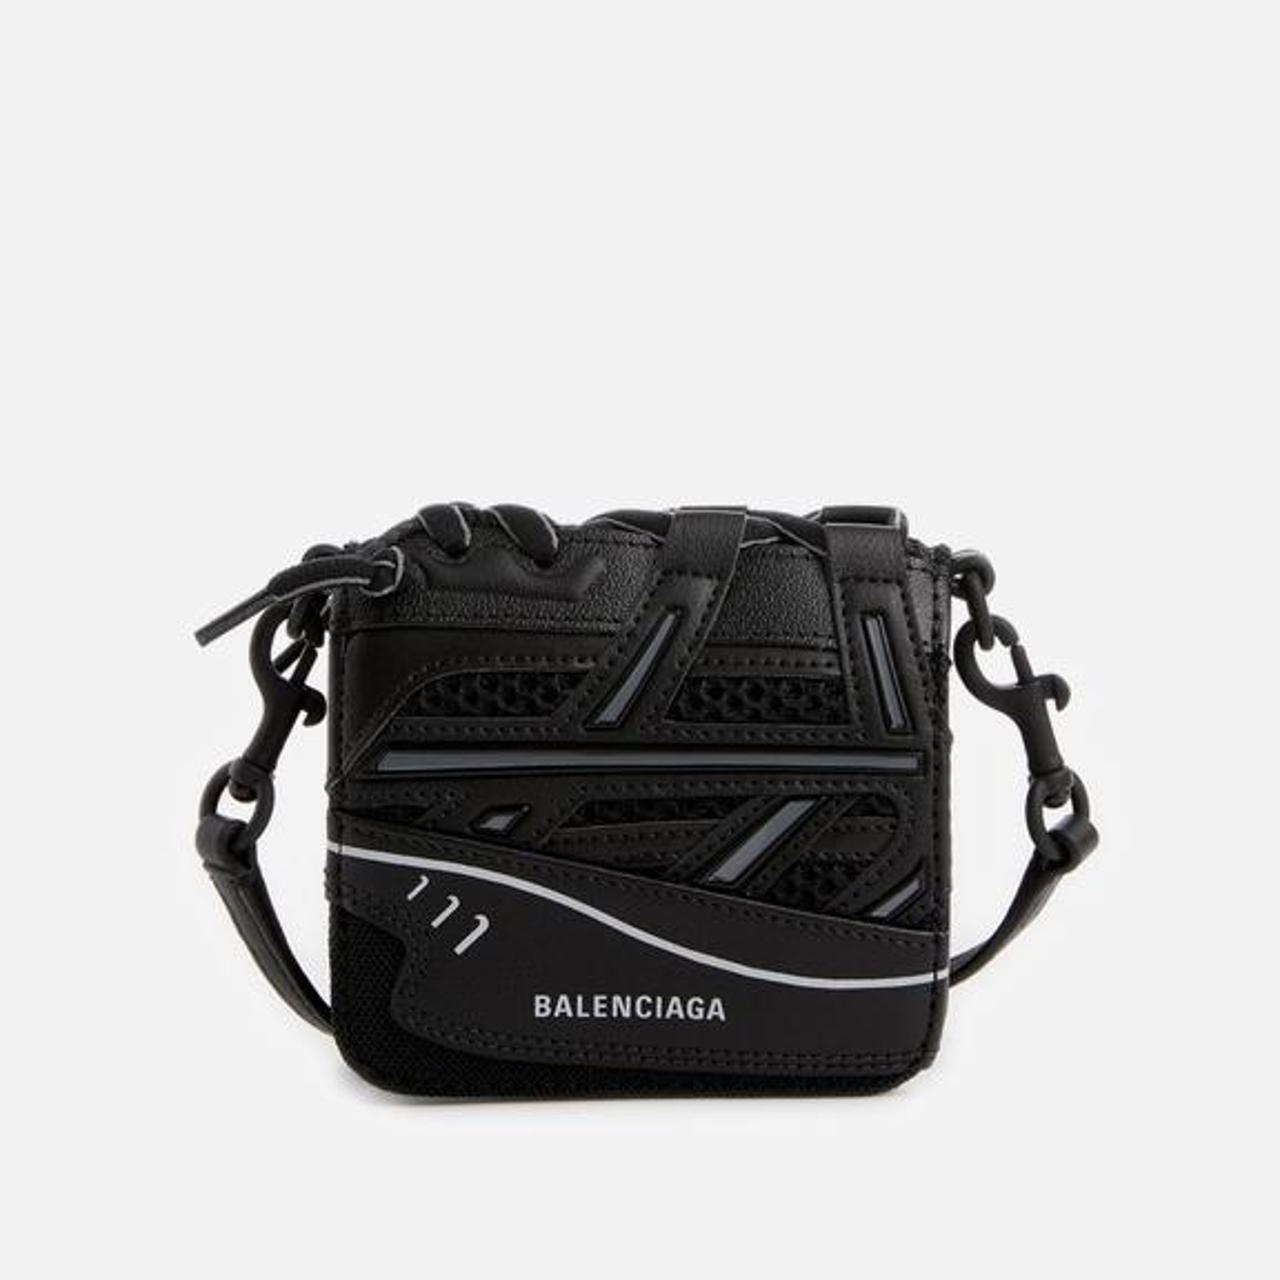 Balenciaga sneakerhead cardholder black micro bag... - Depop